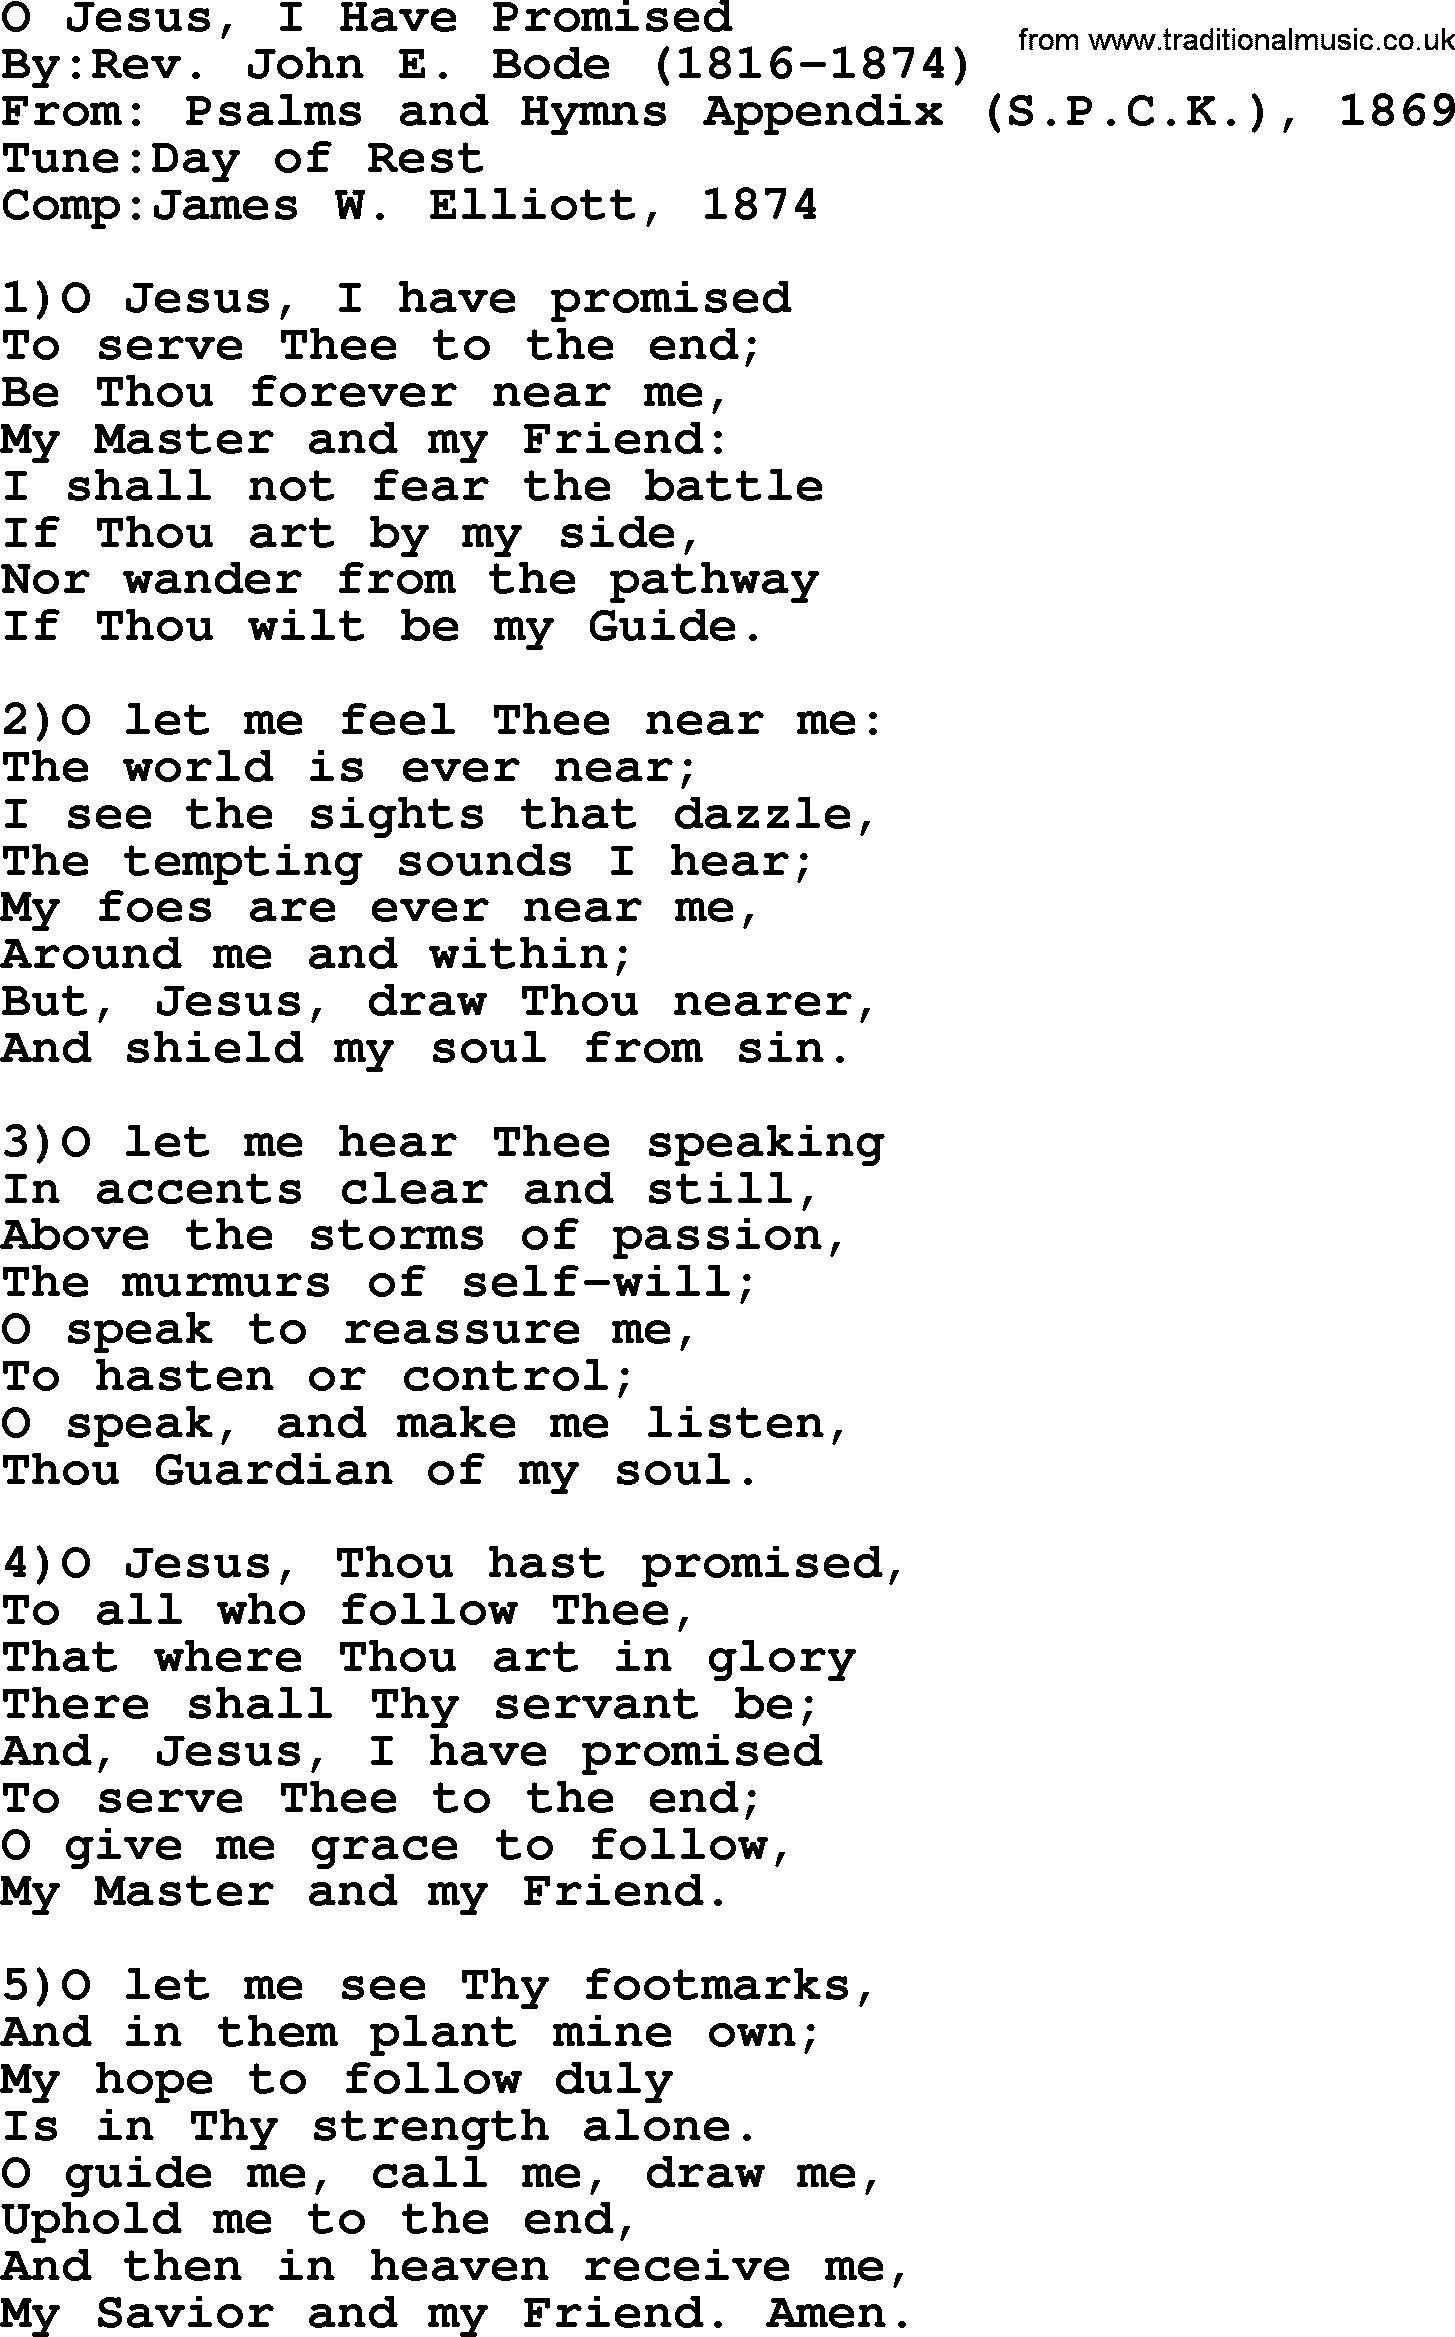 Methodist Hymn: O Jesus, I Have Promised - lyrics with PDF